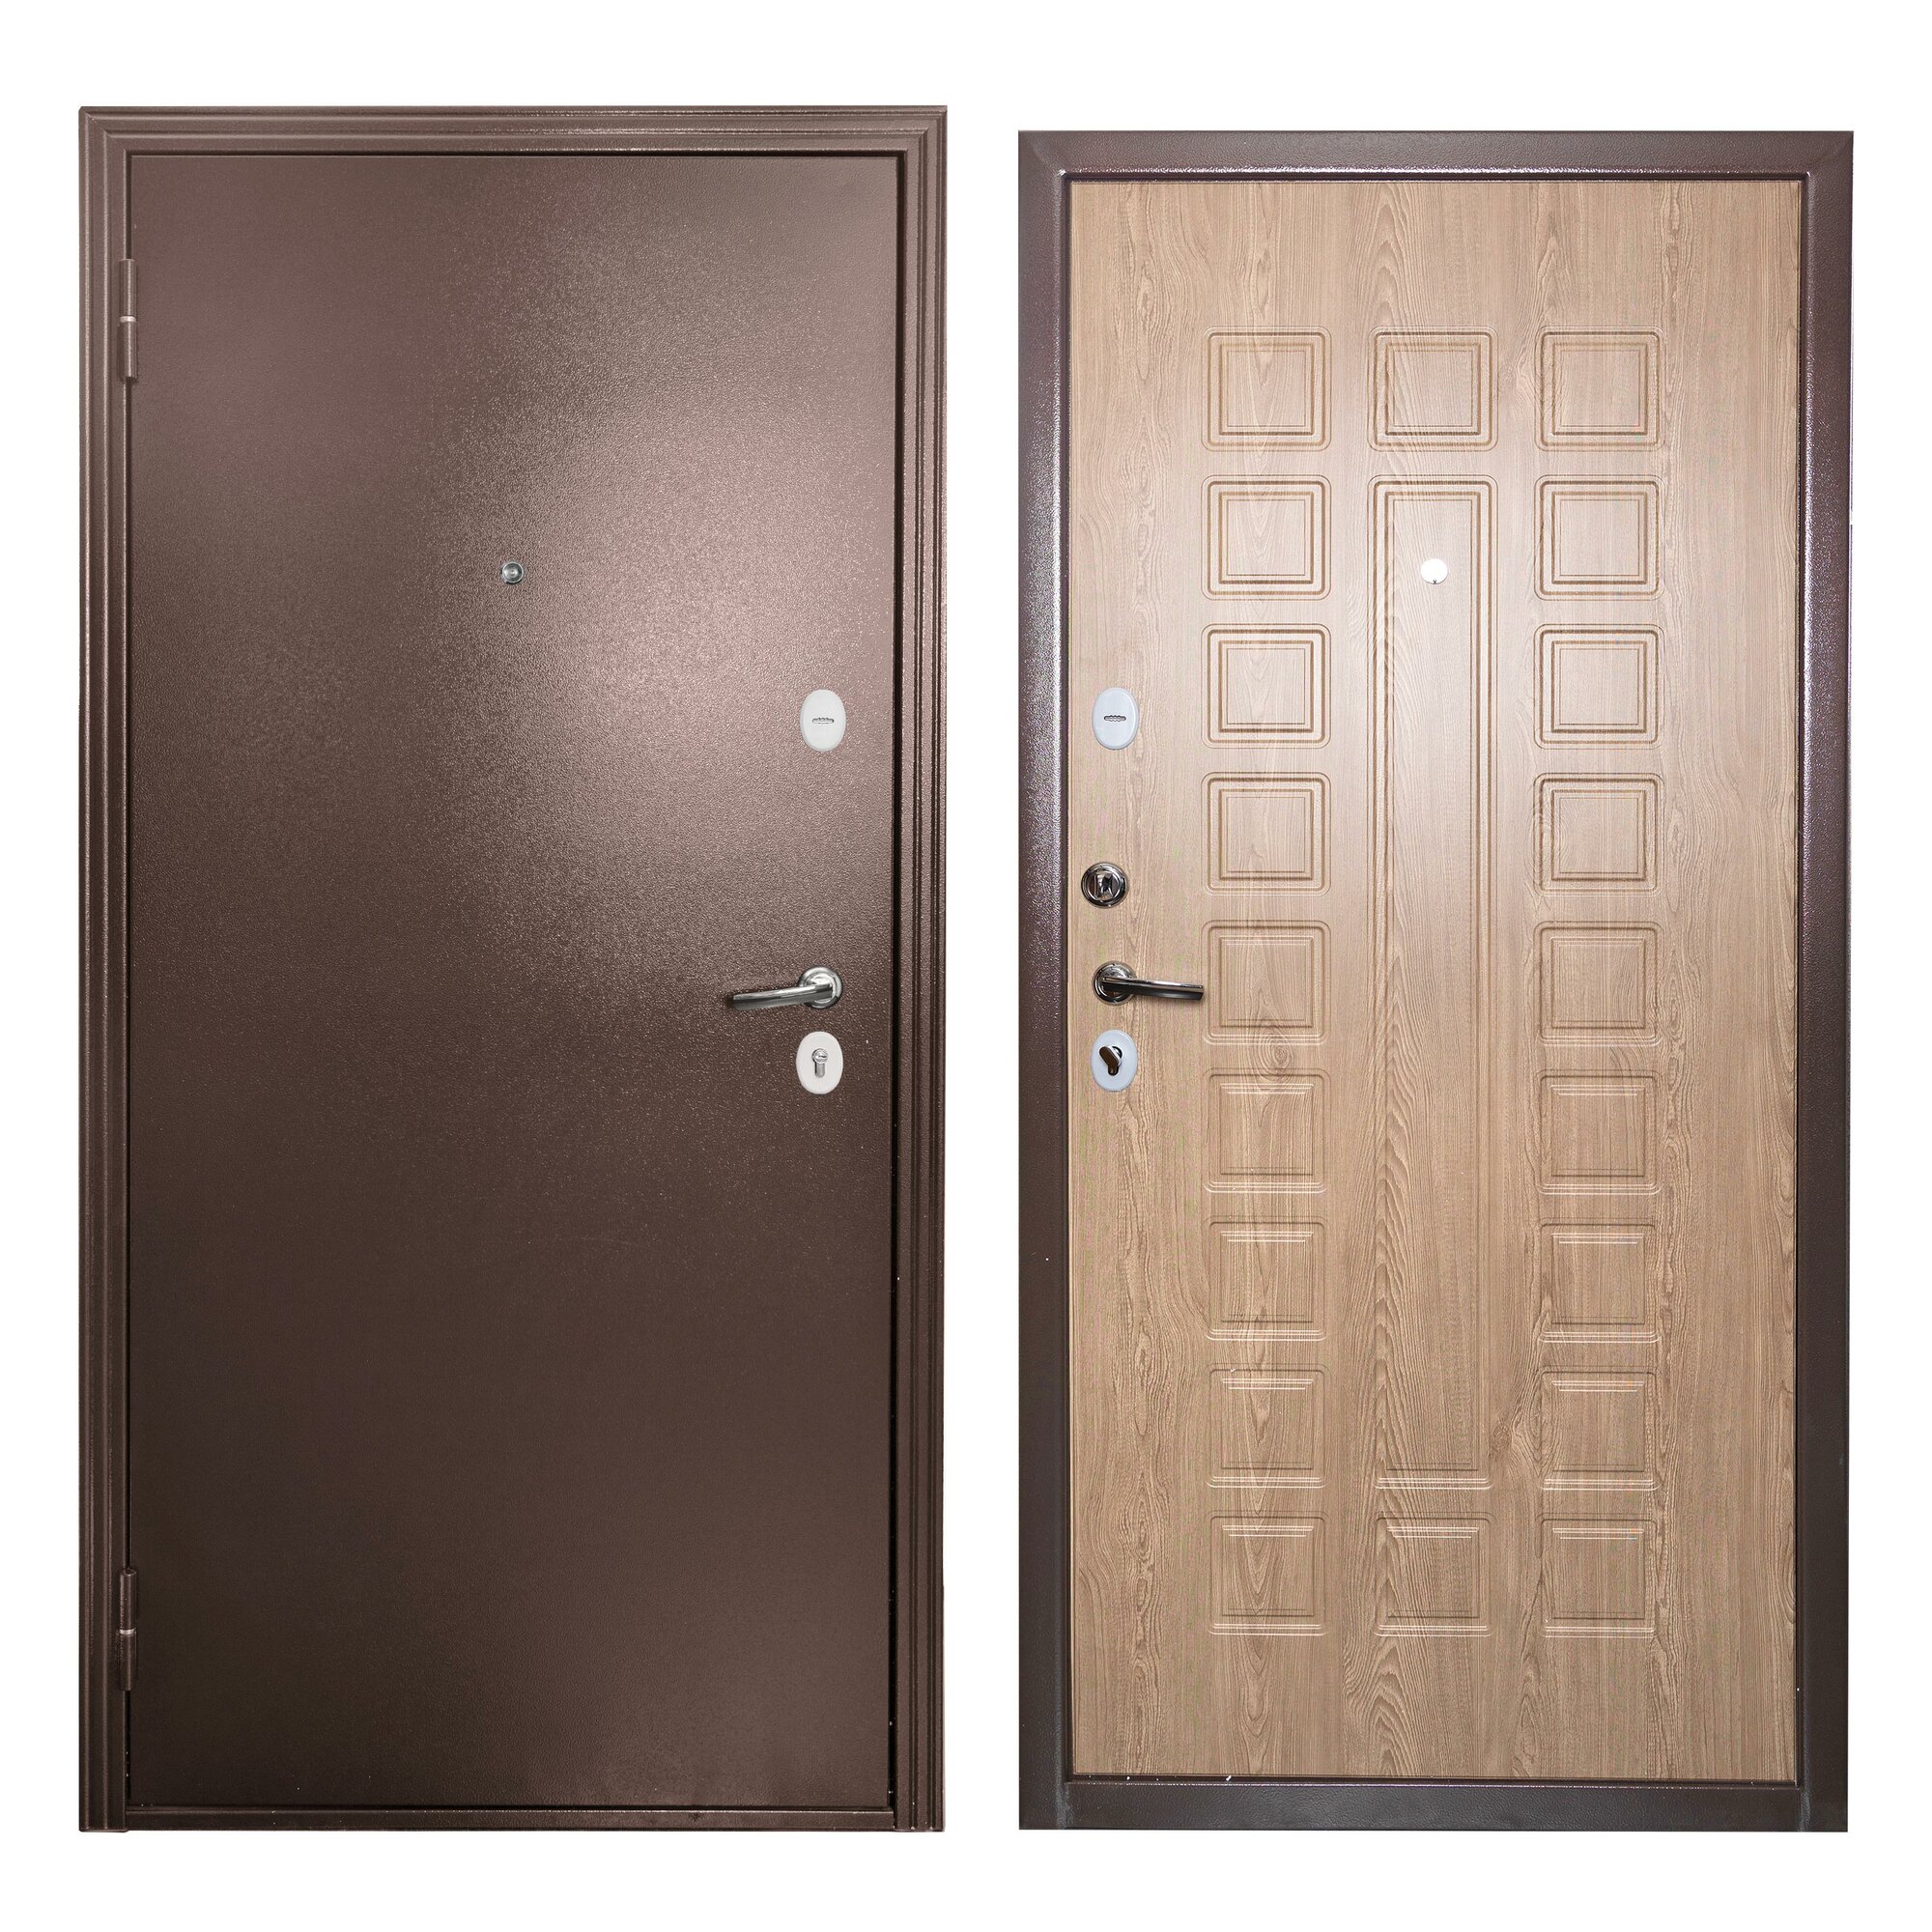 Дверь входная для квартиры Proline Apartment 970х2050 левая, тепло-шумоизоляция, антикоррозийная защита, коричневый/бежевый